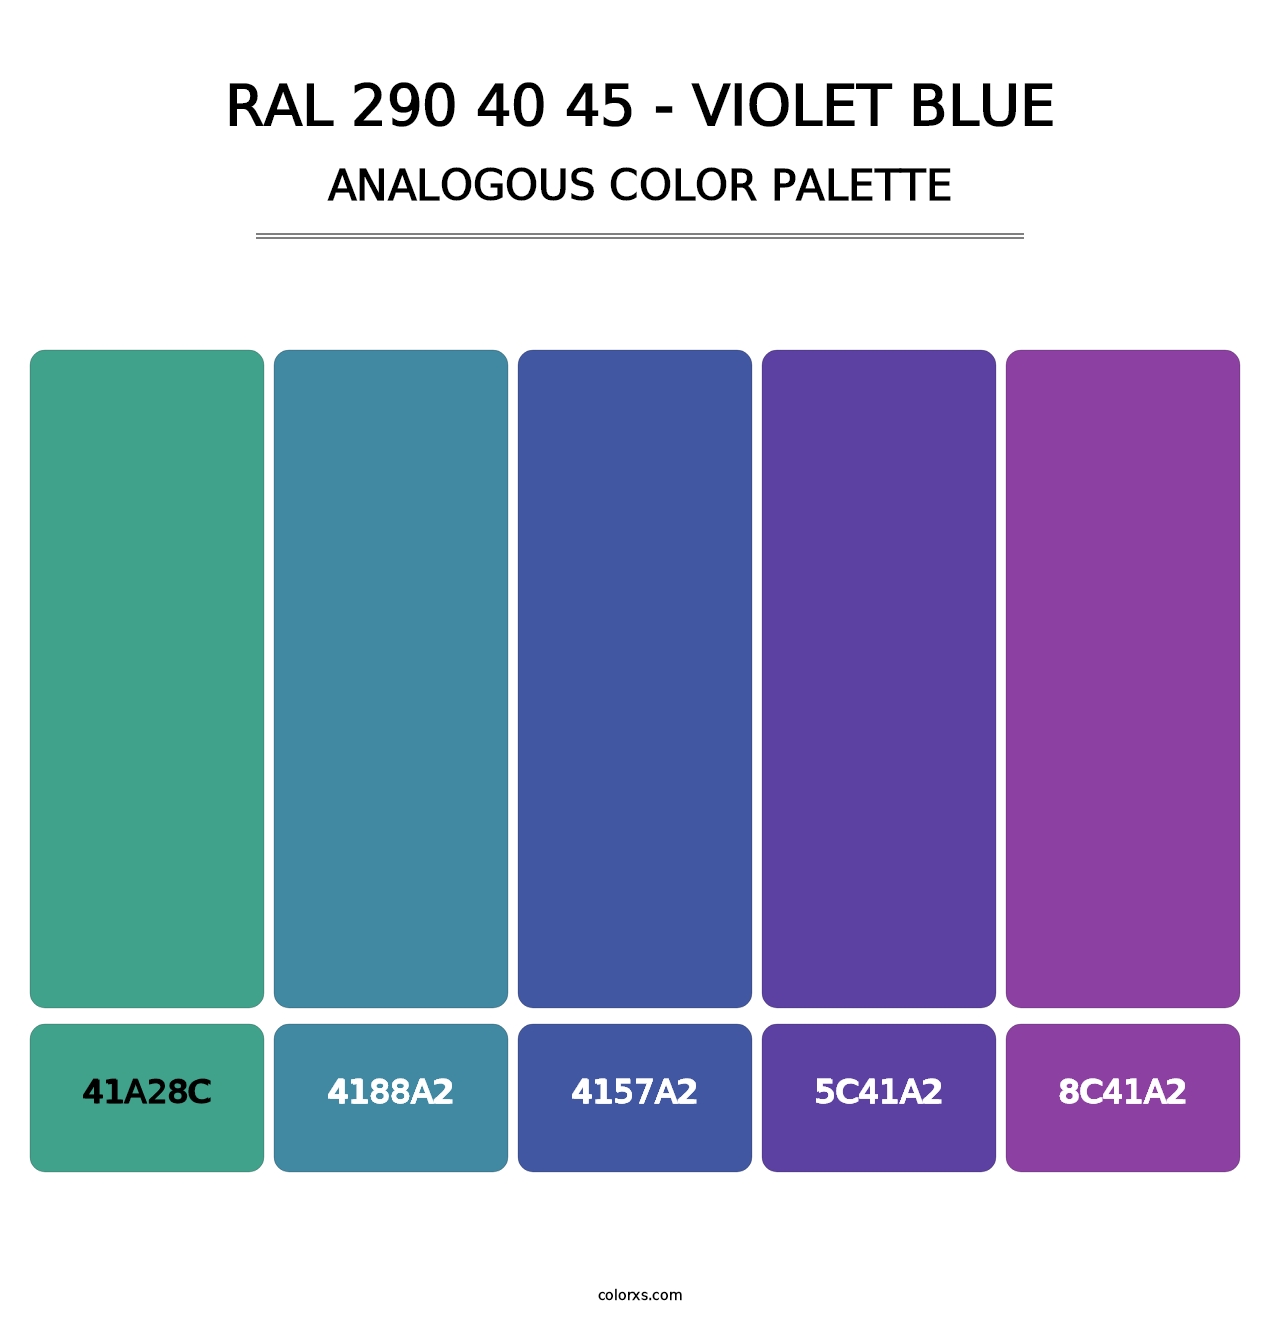 RAL 290 40 45 - Violet Blue - Analogous Color Palette